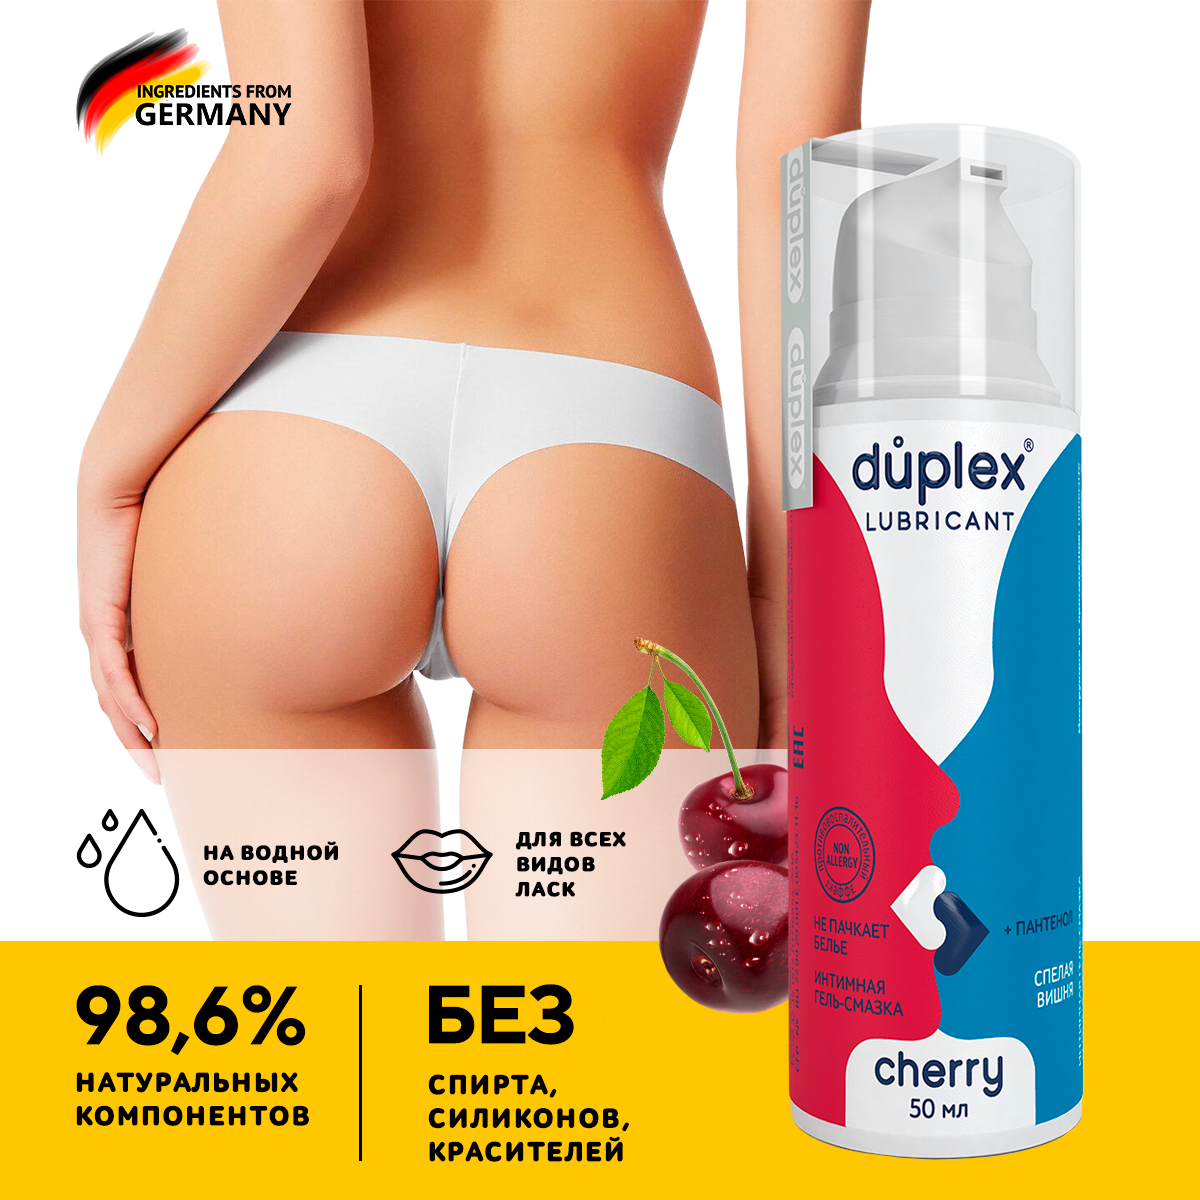 Лубрикант Duplex Cherry интимный гель смазка со вкусом Вишня на водной основе анальный съедобный 18+, с дозатором 50 мл